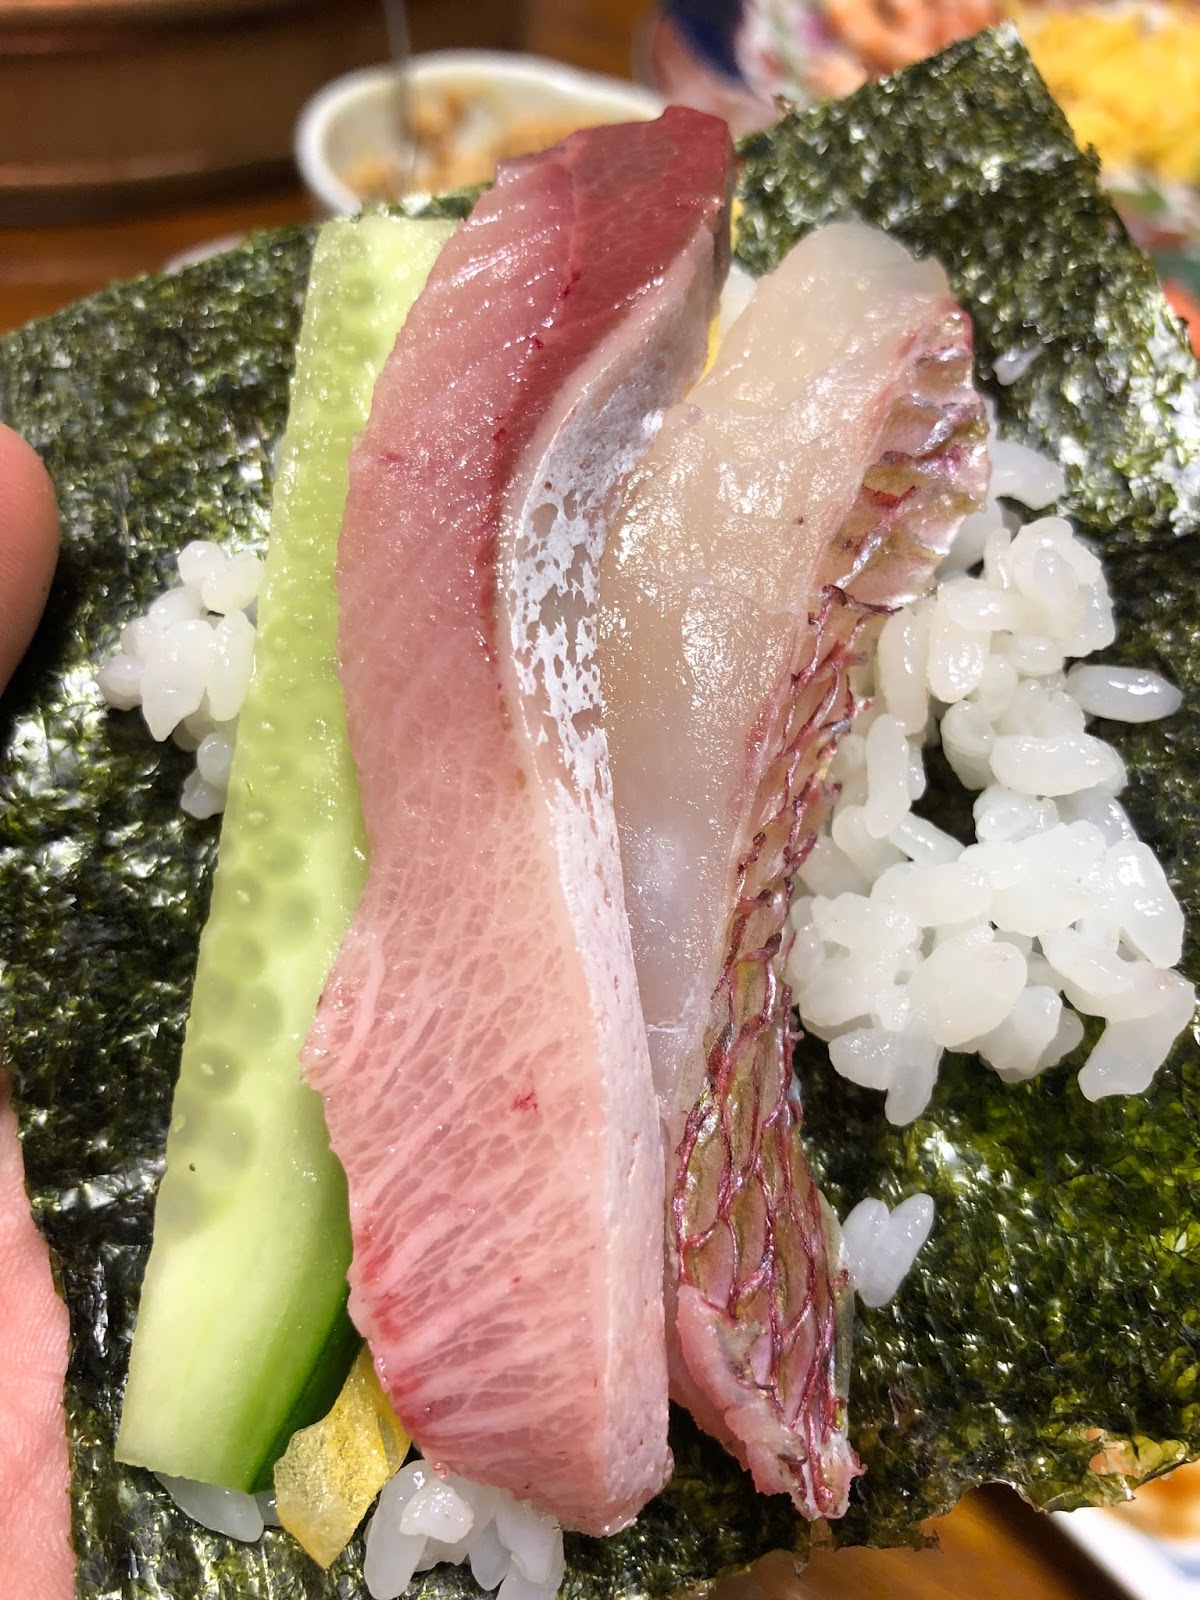 みんな大好き手巻き寿司 元魚屋がおいしい手巻き寿司作りのコツとおすすめのネタをご紹介します イクメンライフハッカー